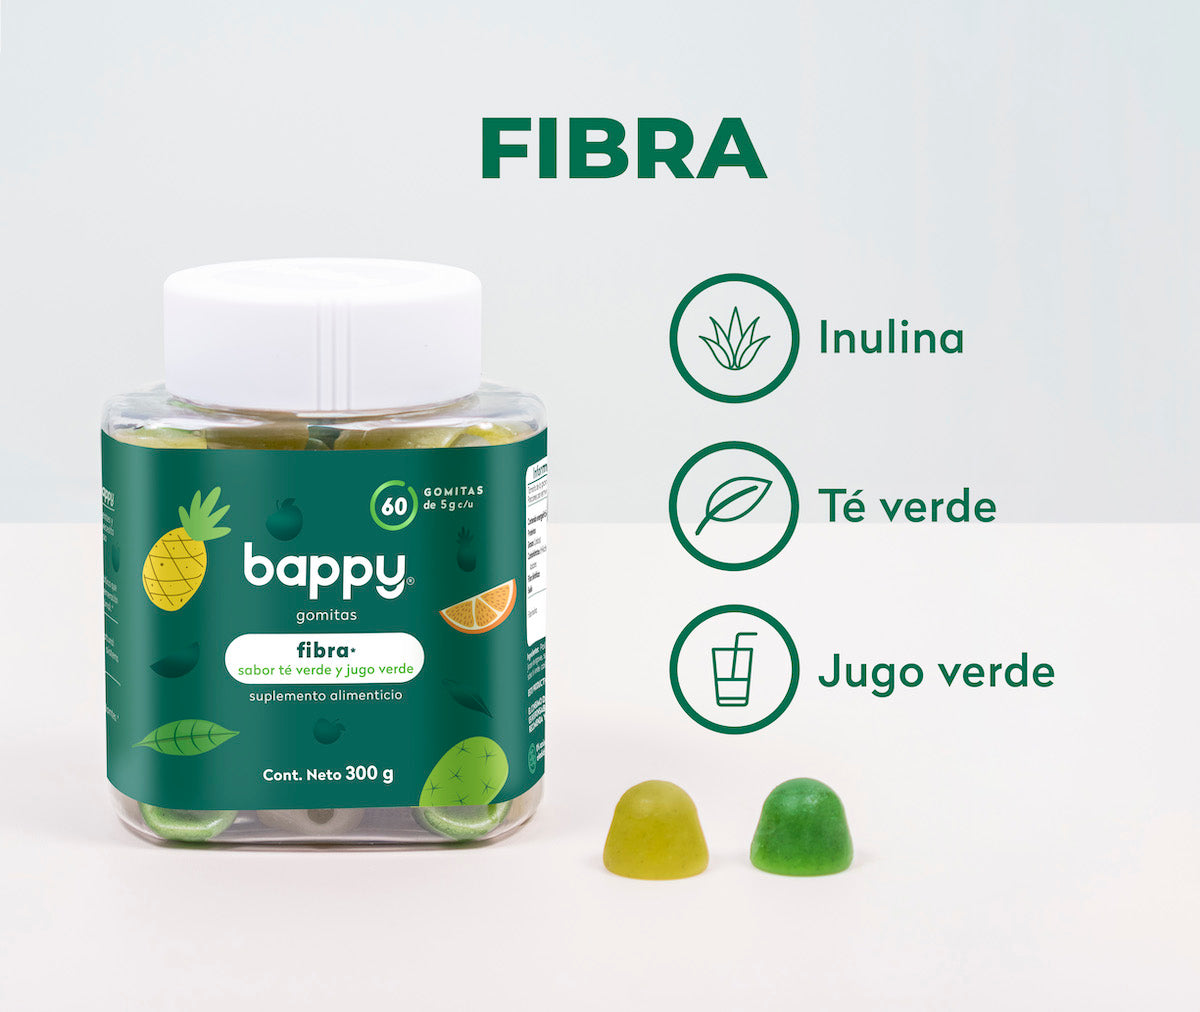 FIBRA: inulina, té verde y jugo verde